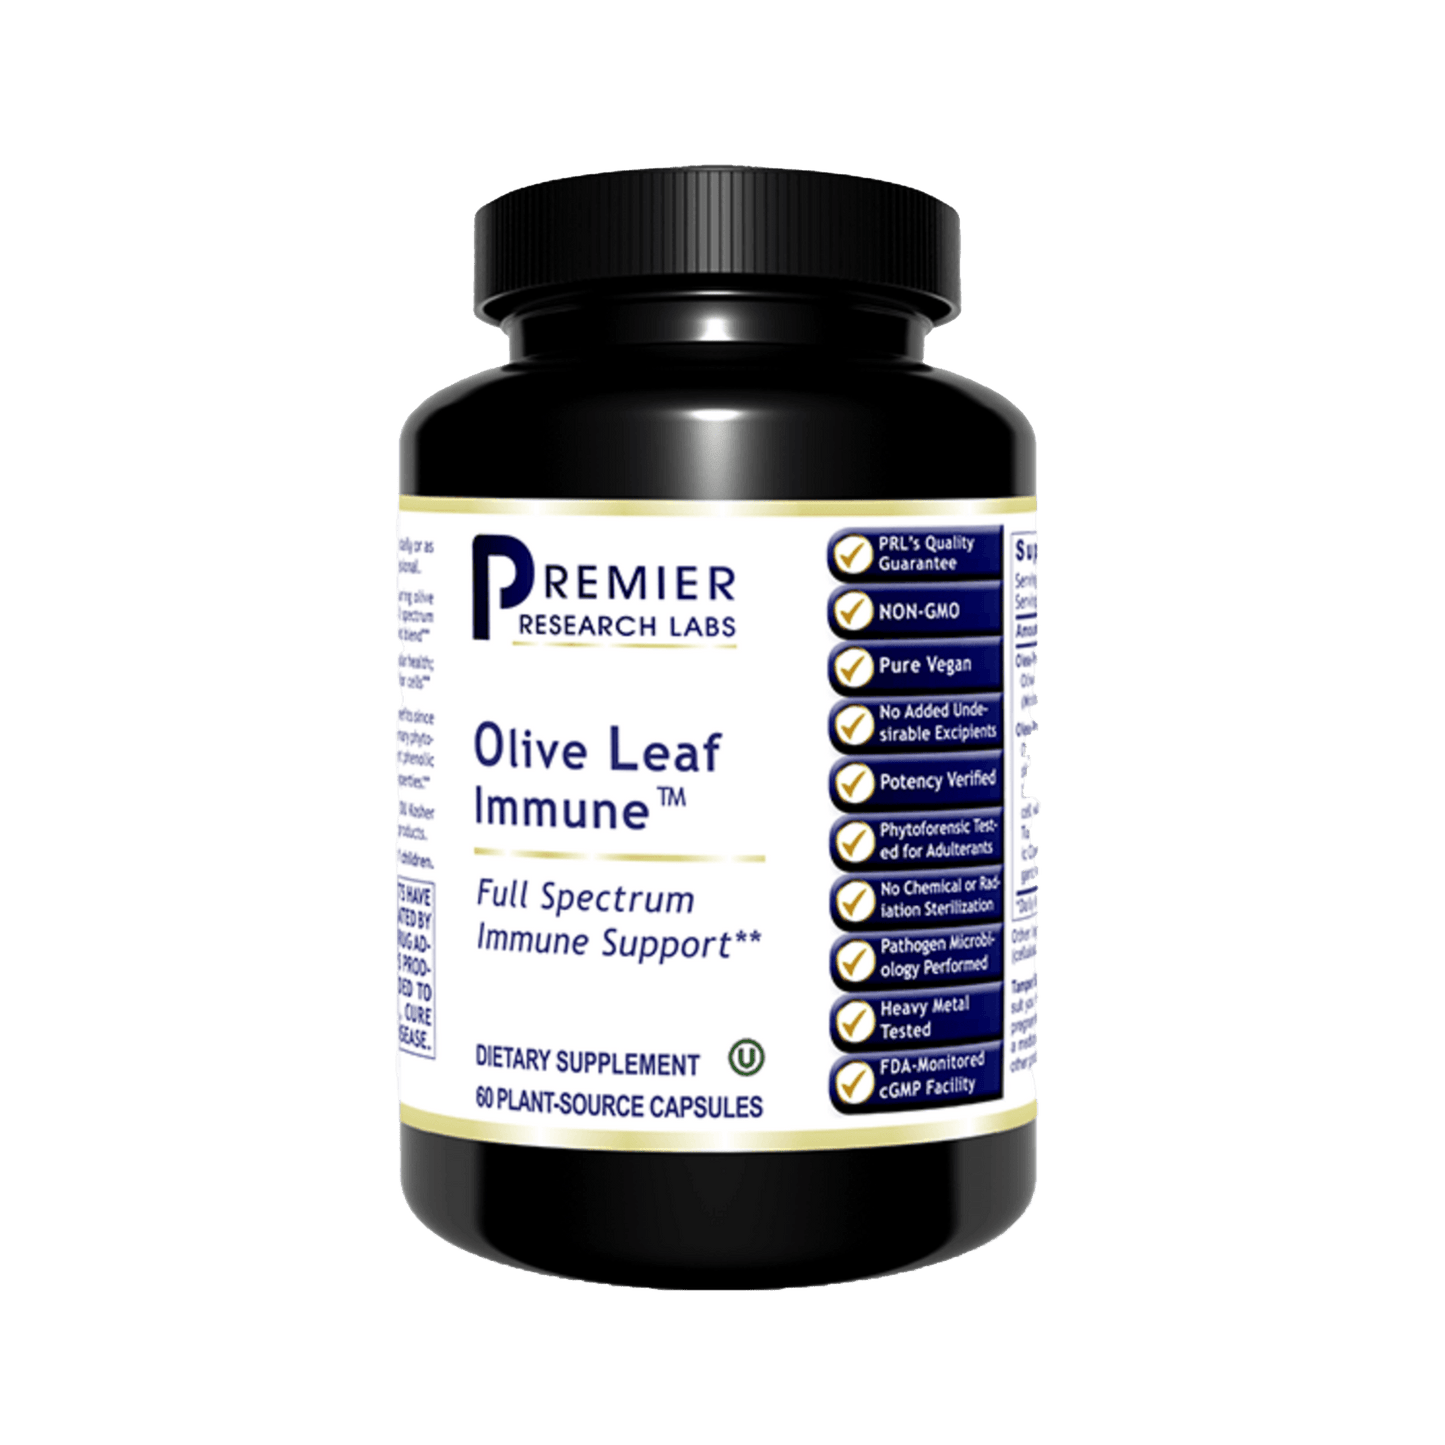 Olive leaf immune